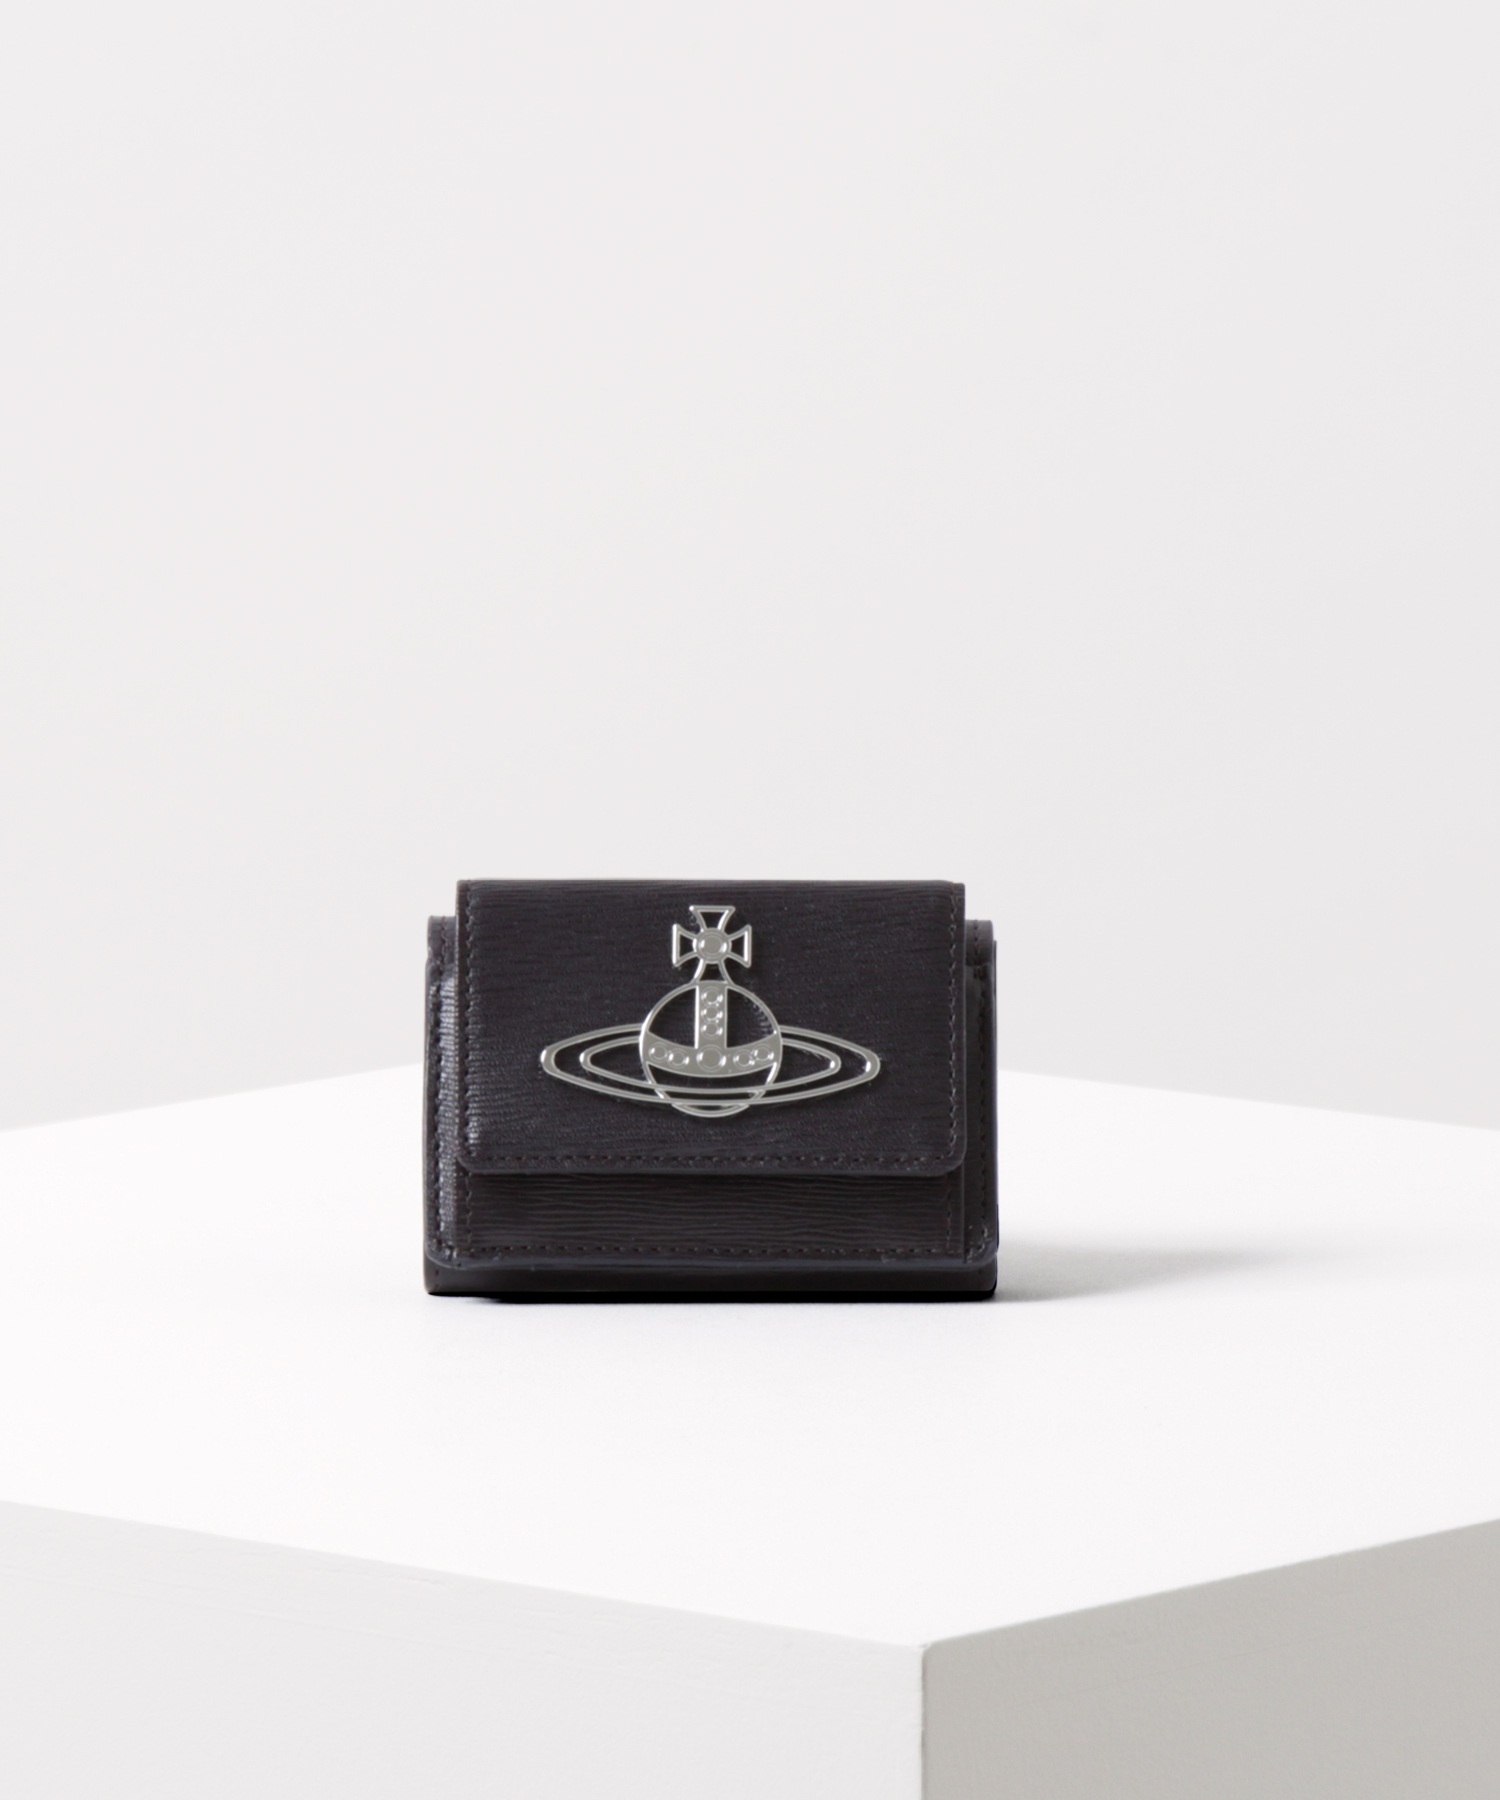 人気のミニ財布はVivienne WestwoodのSIMPLE TINY ORBです